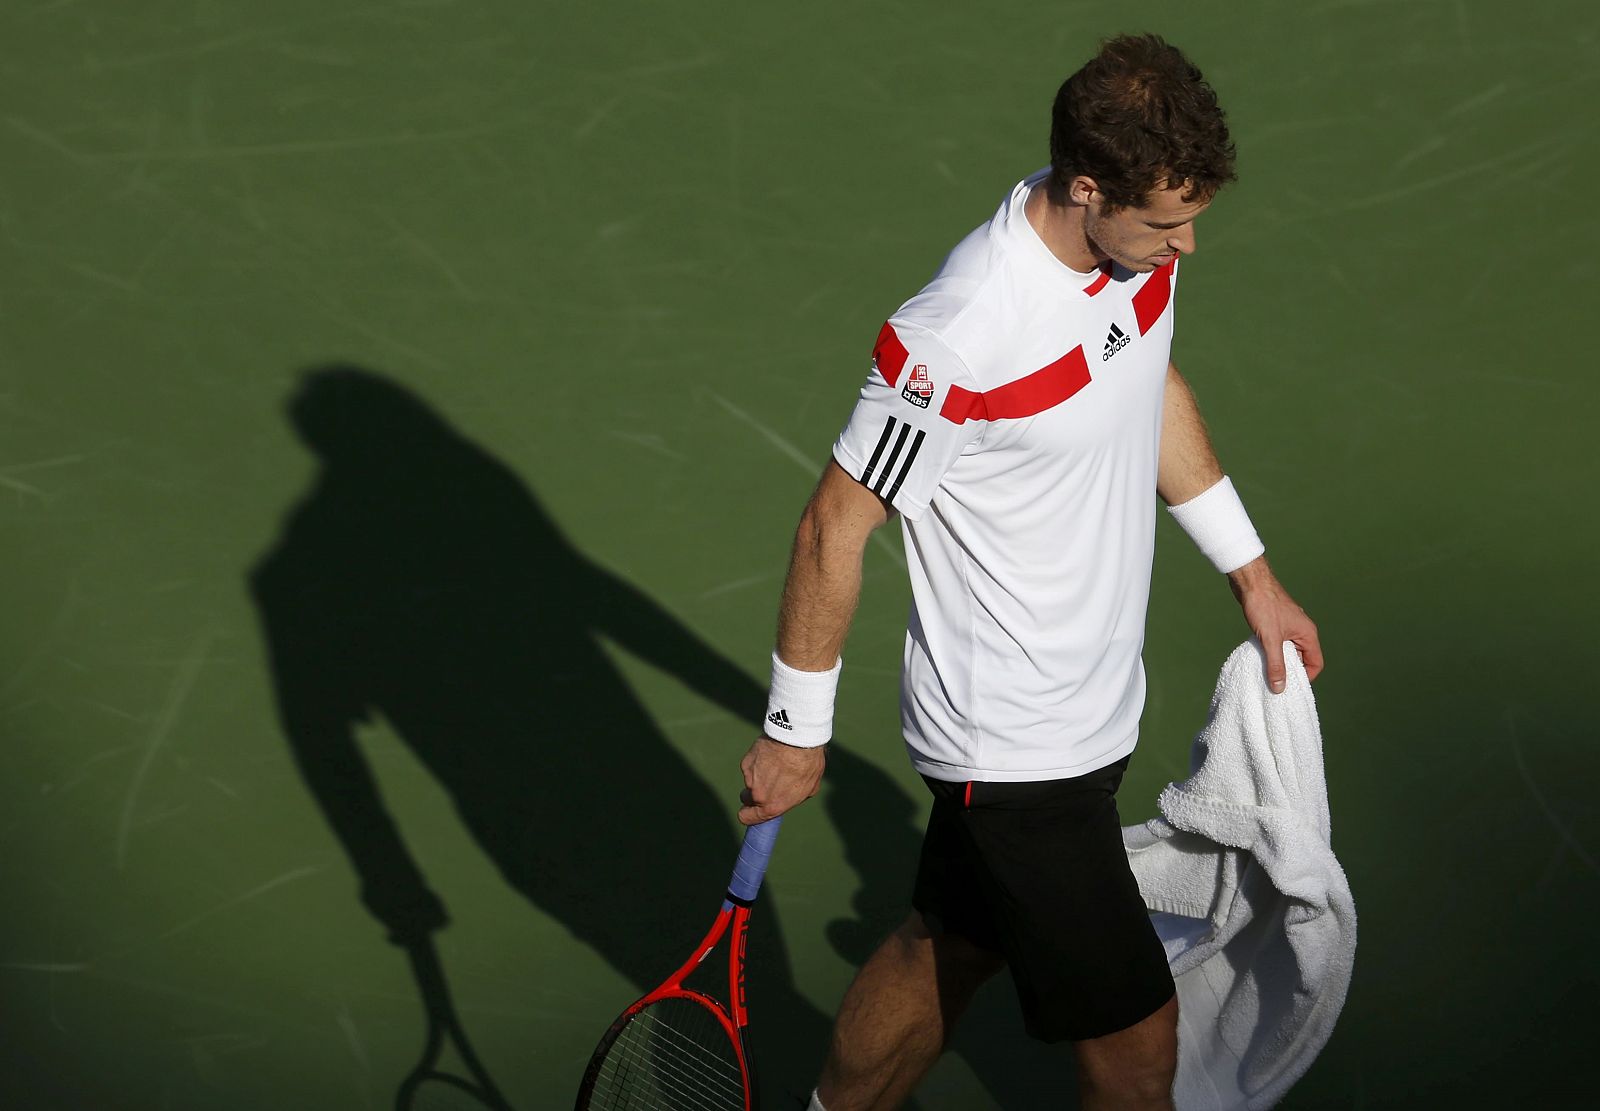 El británico Andy Murray, que defendía título en el US Open, ha caído derrotado contra Wawrinka, que no le ha cedido ni un sólo set